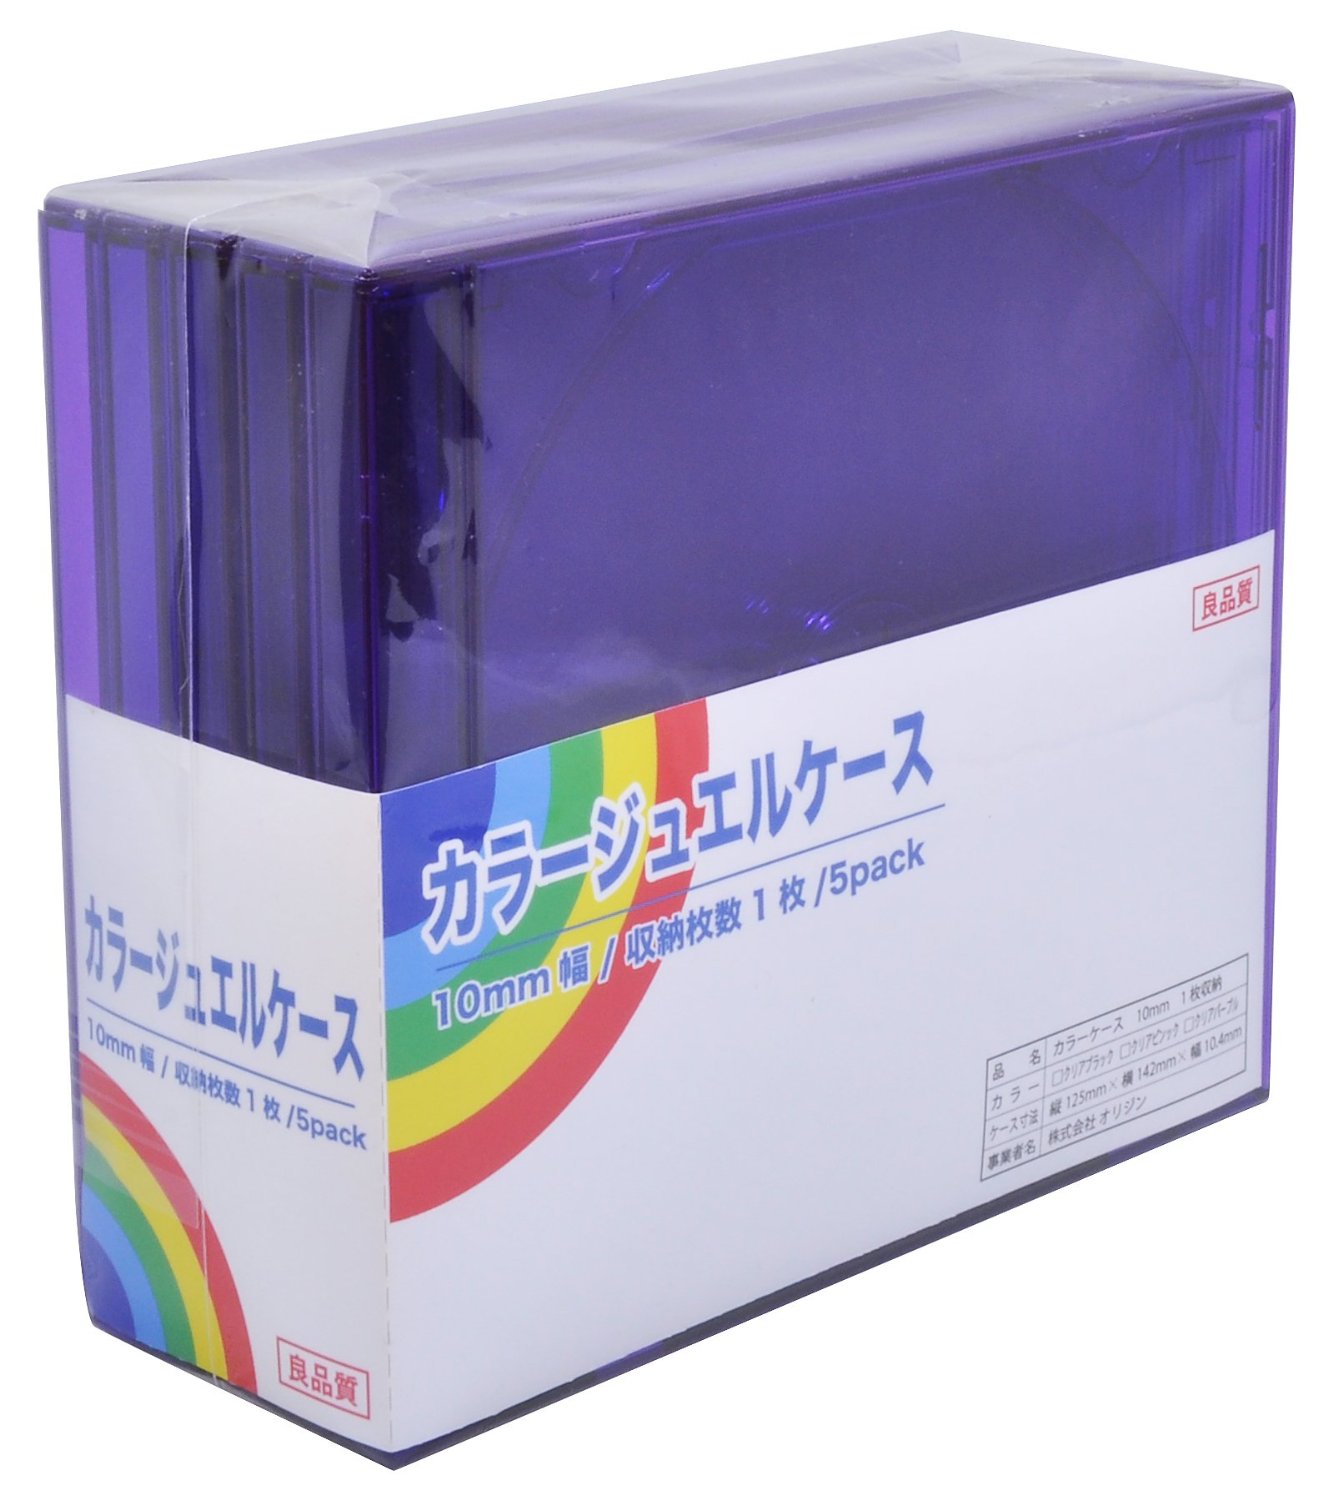 カラージュエルケース10mm クリアパープル 5Pack ORIGIN ONLINE STORE: CD・DVD・BDのコピー、各種ケース 通販の総合サイト